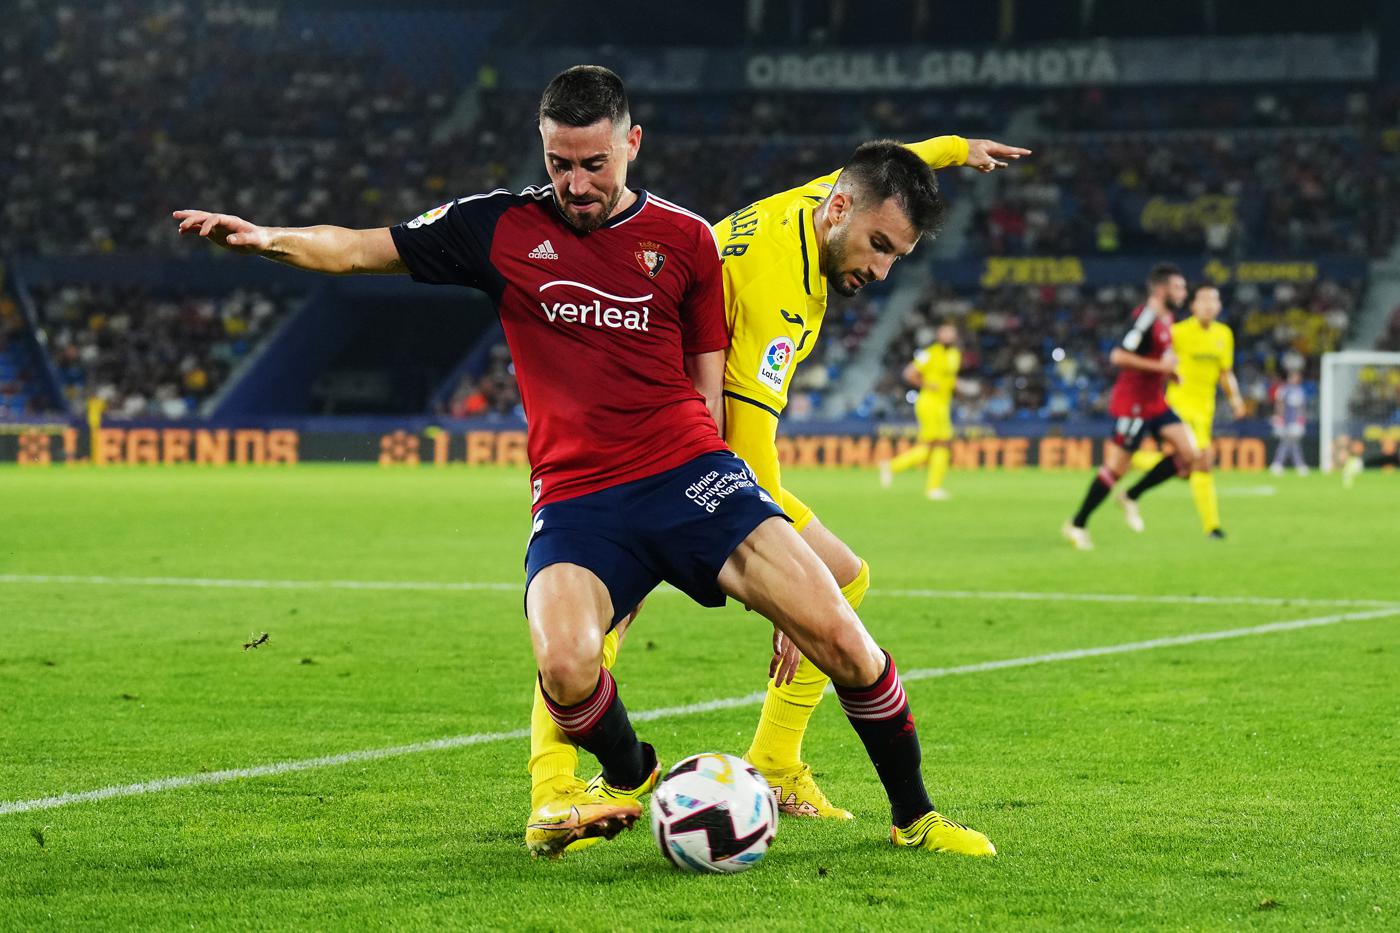 Osasuna - Villarreal - 0:3. Mistrzostwa Hiszpanii UEFA, dzień meczowy 26. Przegląd meczu, statystyki.